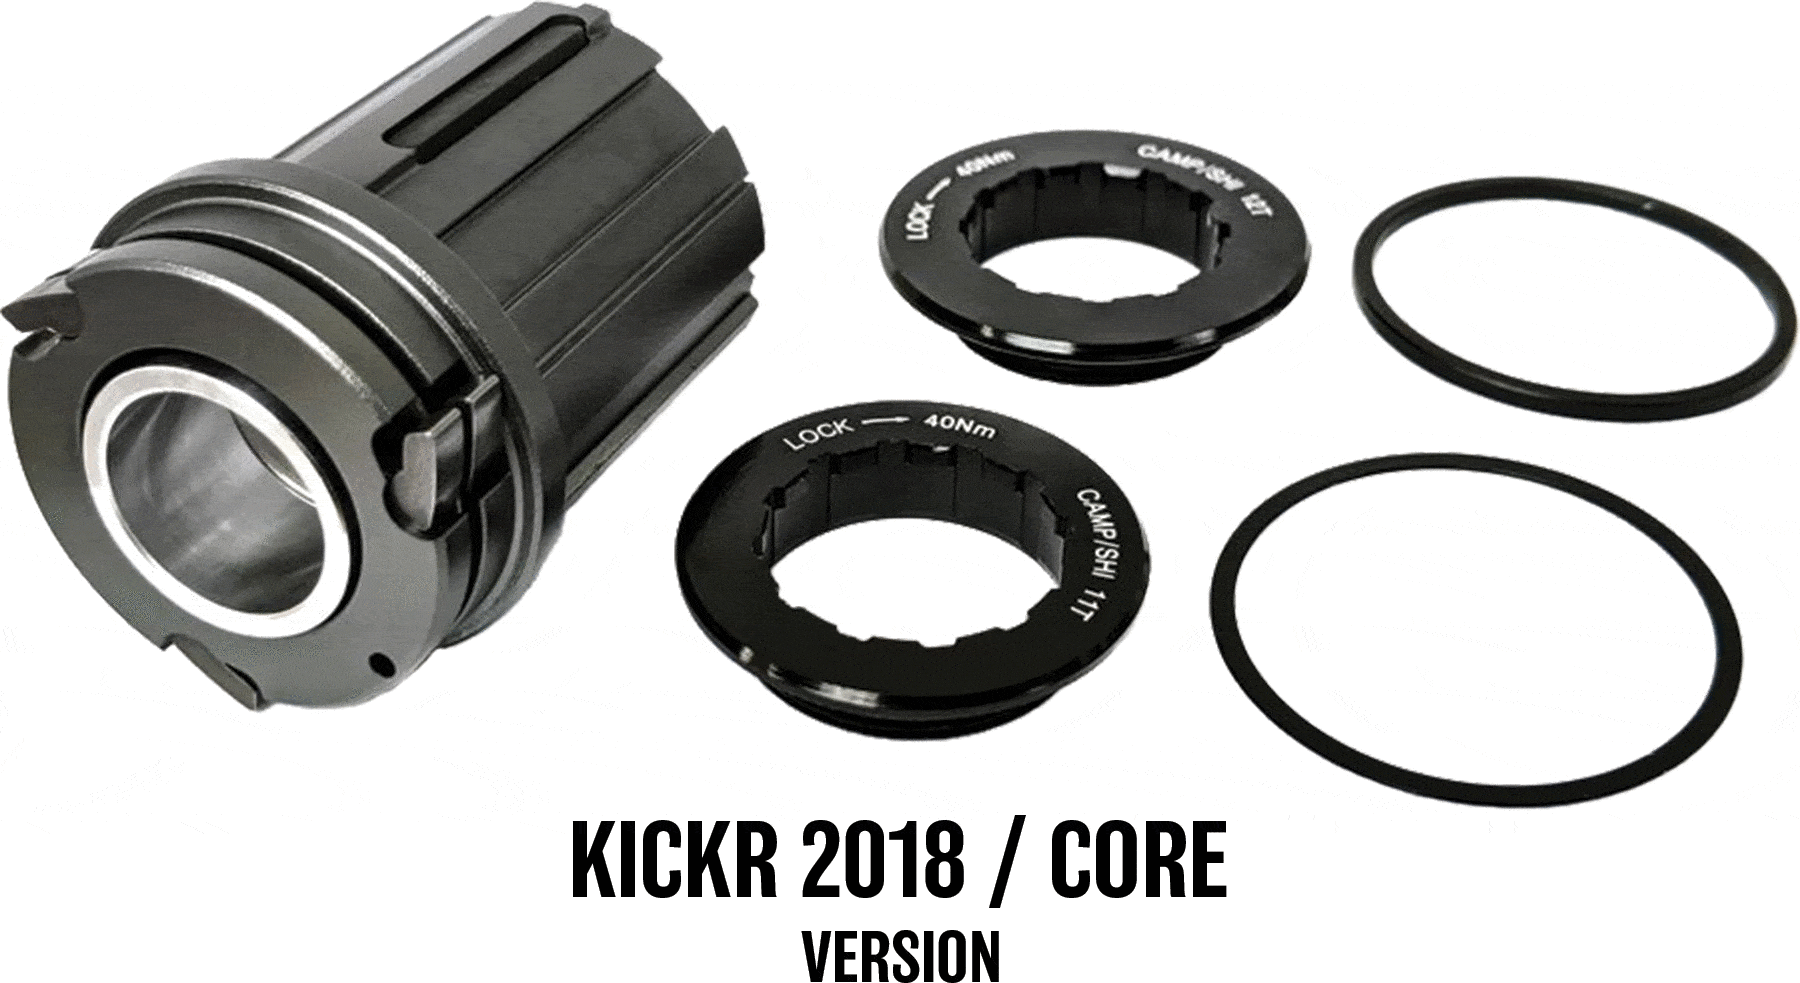 Corps de cassette Campagnolo pour support d'entraînement KicKr/Core Corps de cassette Wahoo 